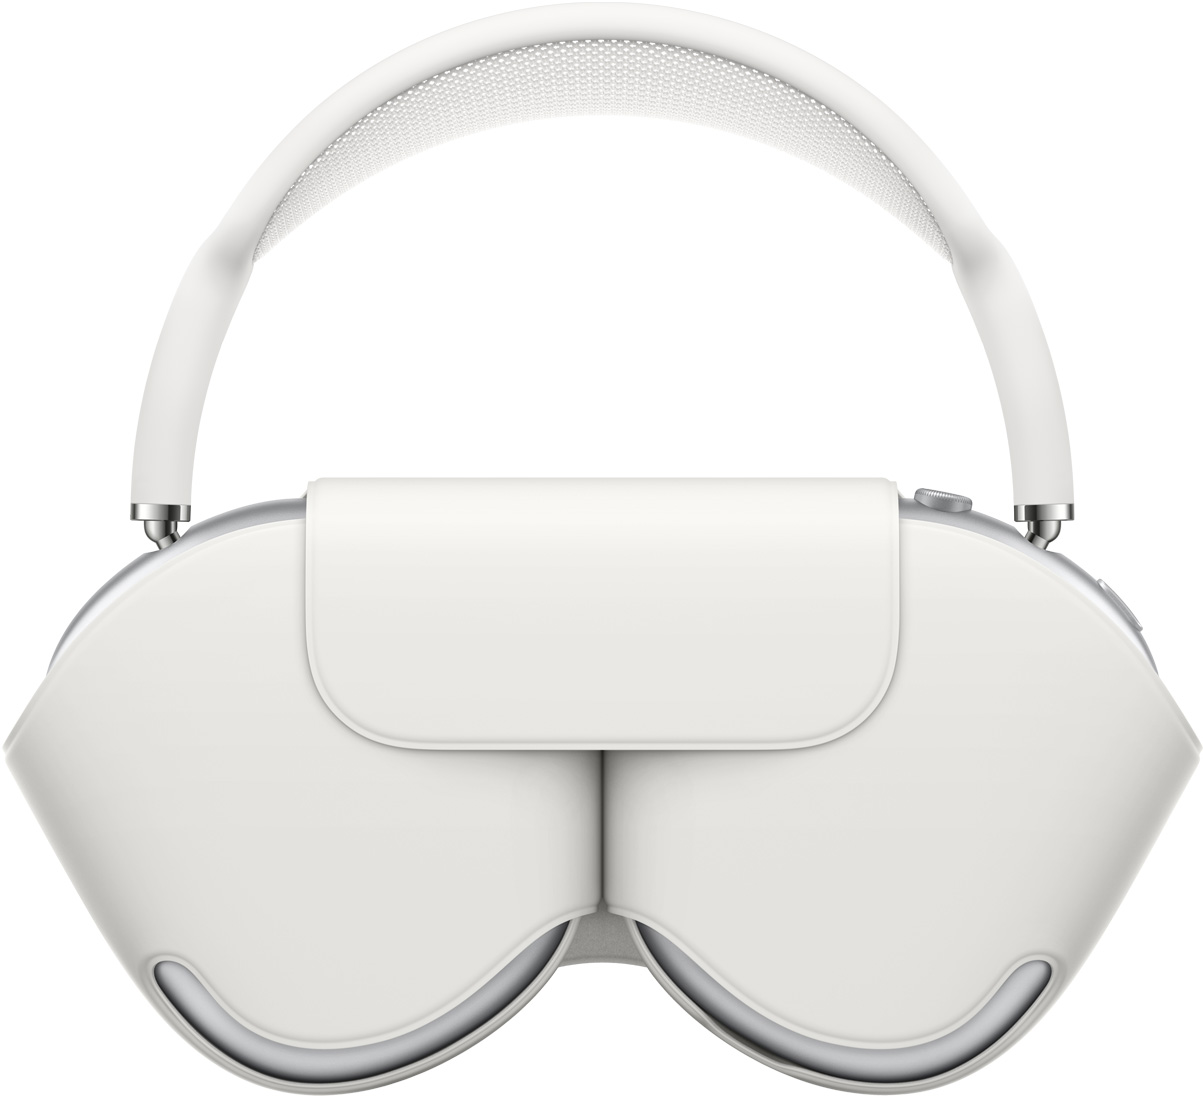 AirPods Max i sølv med matchende hvid Smart Case, der beskytter ørekopperne. Bøjlen stikker ud af etuiet, når hovedtelefonerne opbevares.